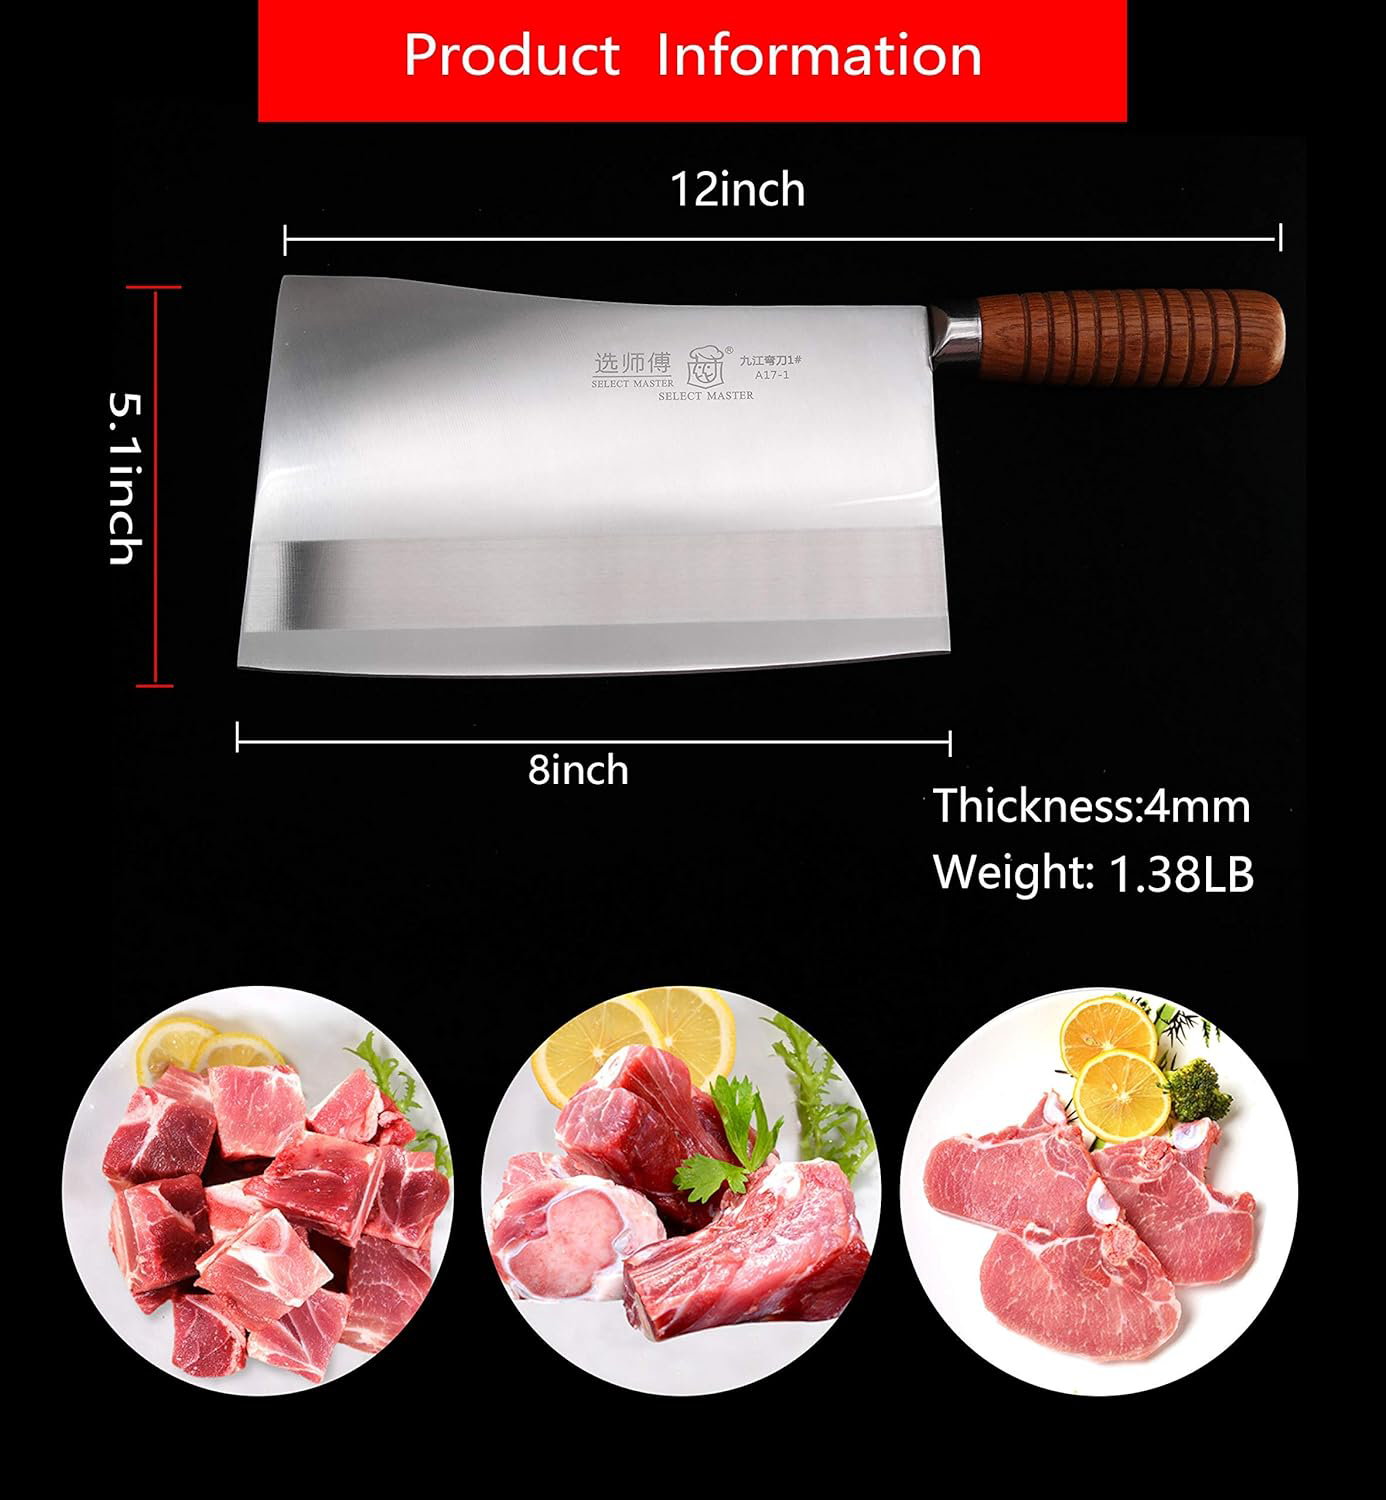 KD 6 Inch Chop Bone Knife Heavy Duty Kitchen Meat Cleaver – Knife